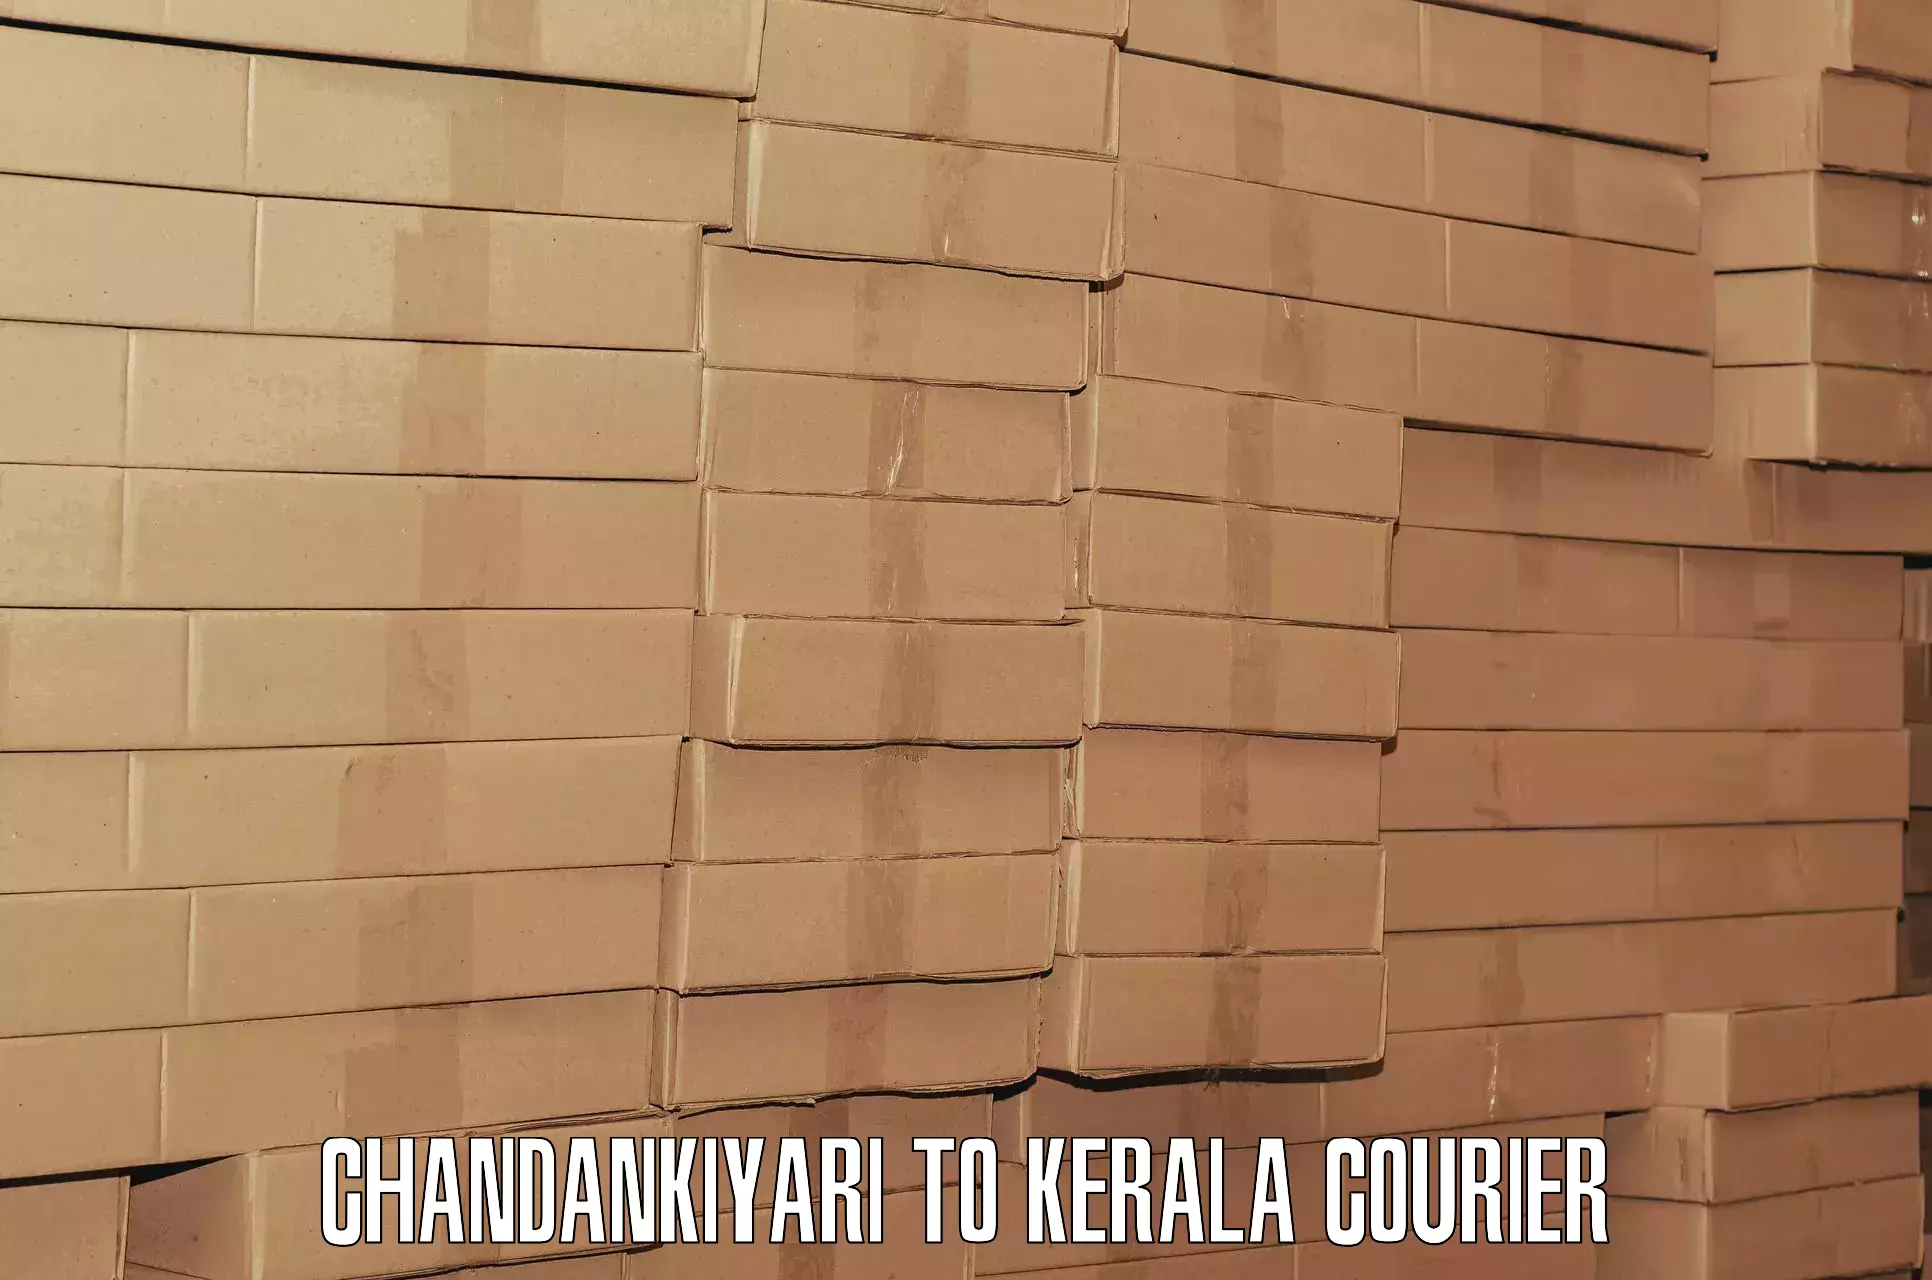 Luggage shipment tracking Chandankiyari to Changanacherry